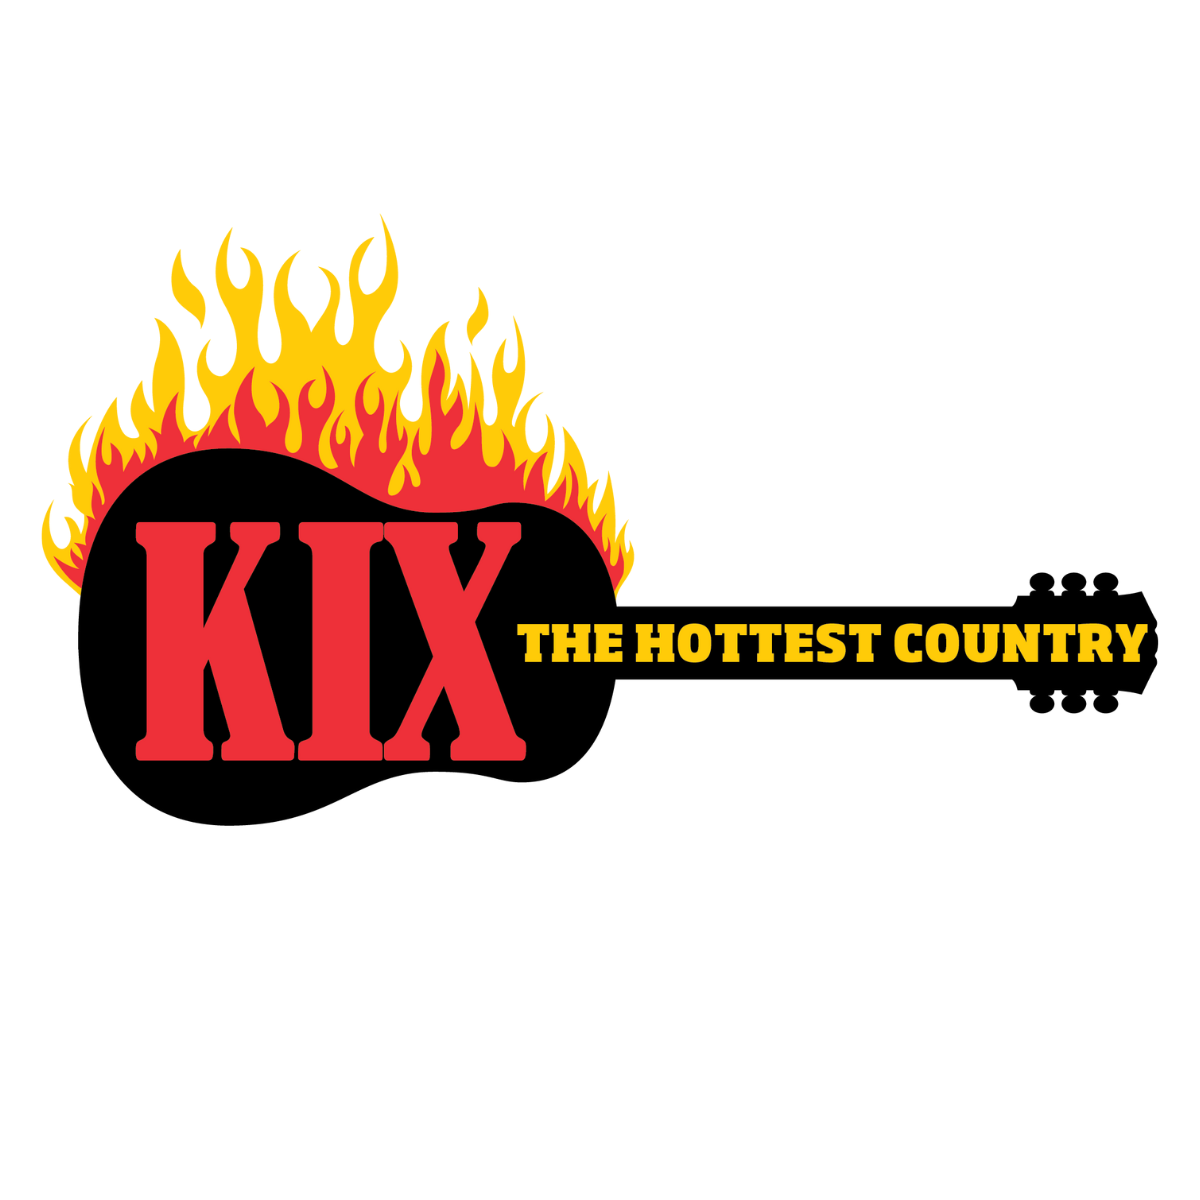 KIX Country